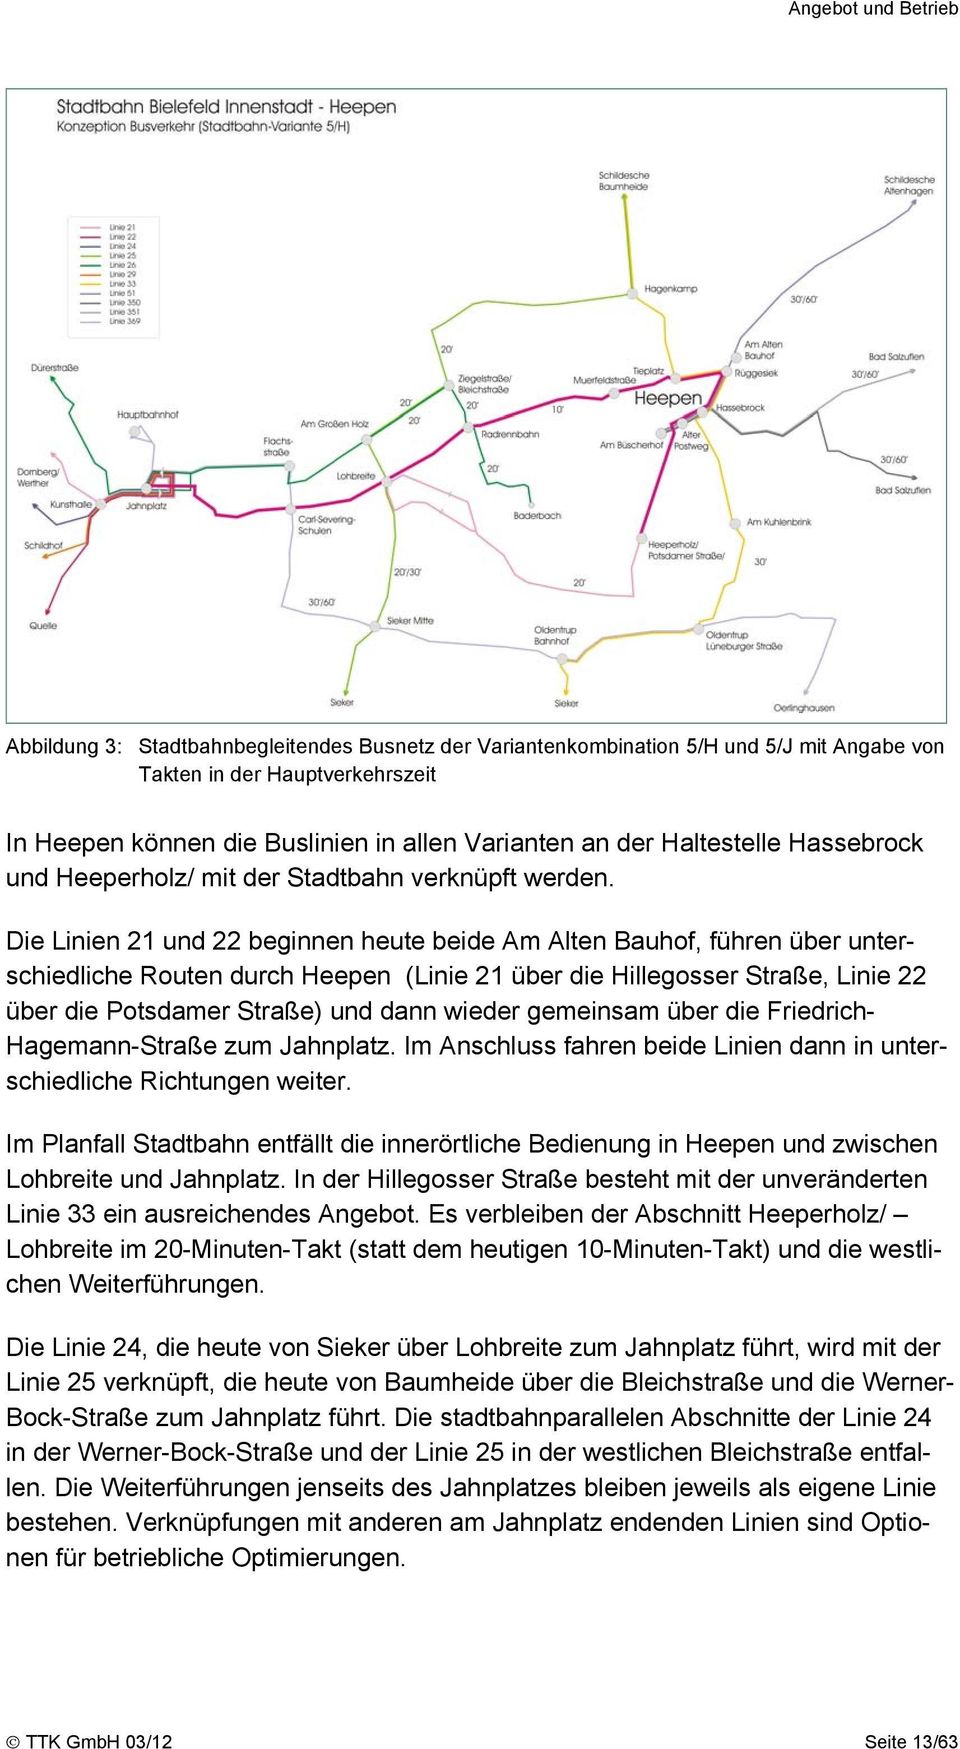 Die Linien 21 und 22 beginnen heute beide Am Alten Bauhof, führen über unterschiedliche Routen durch Heepen (Linie 21 über die Hillegosser Straße, Linie 22 über die Potsdamer Straße) und dann wieder